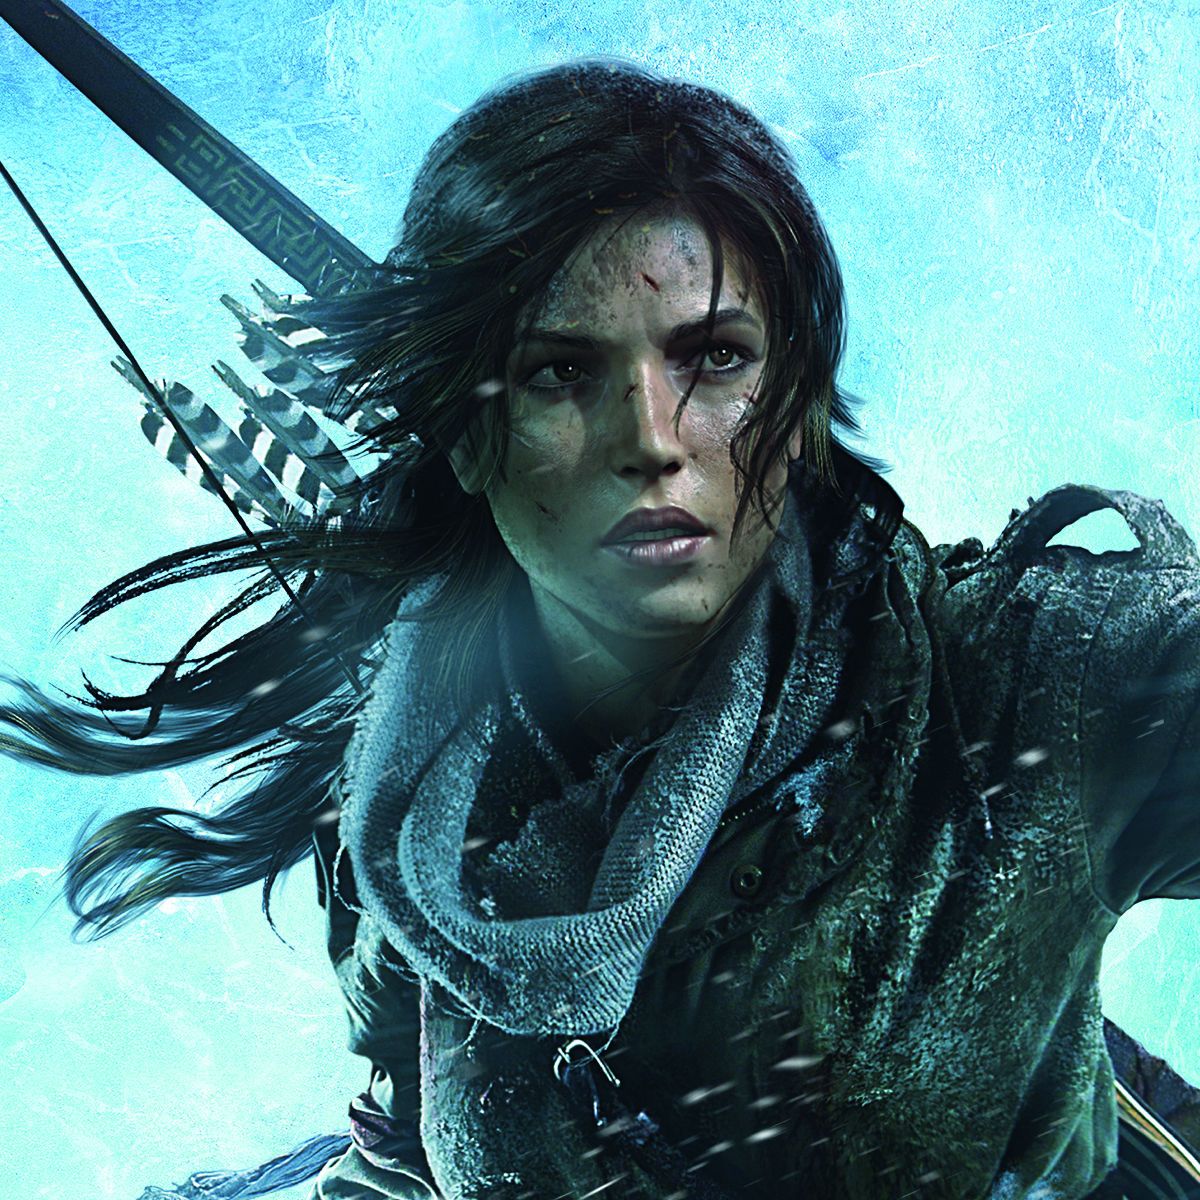 Lara Croft enters the Golden Joystick Hall of Fame